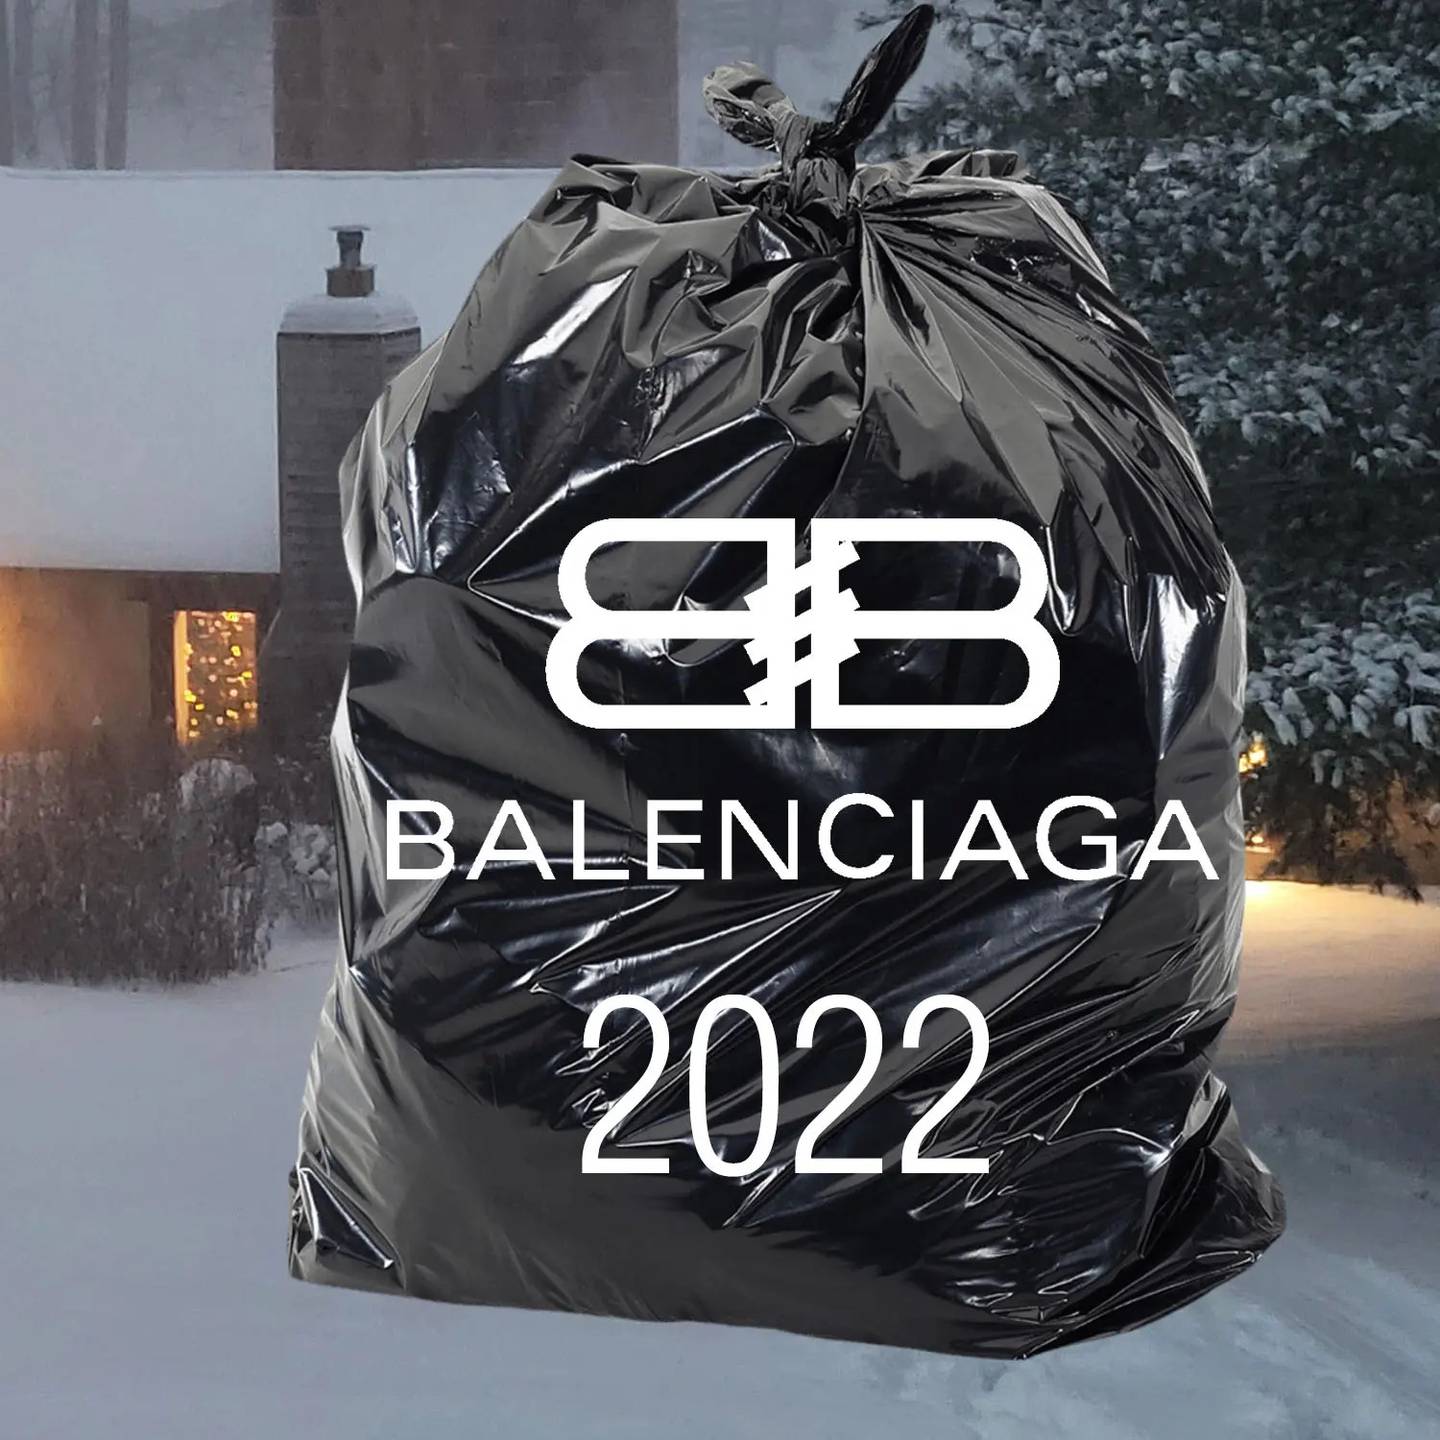 Balenciaga geriet wegen seiner Werbekampagne für die Weihnachtszeit unter Beschuss.  Foto: Balenciaga